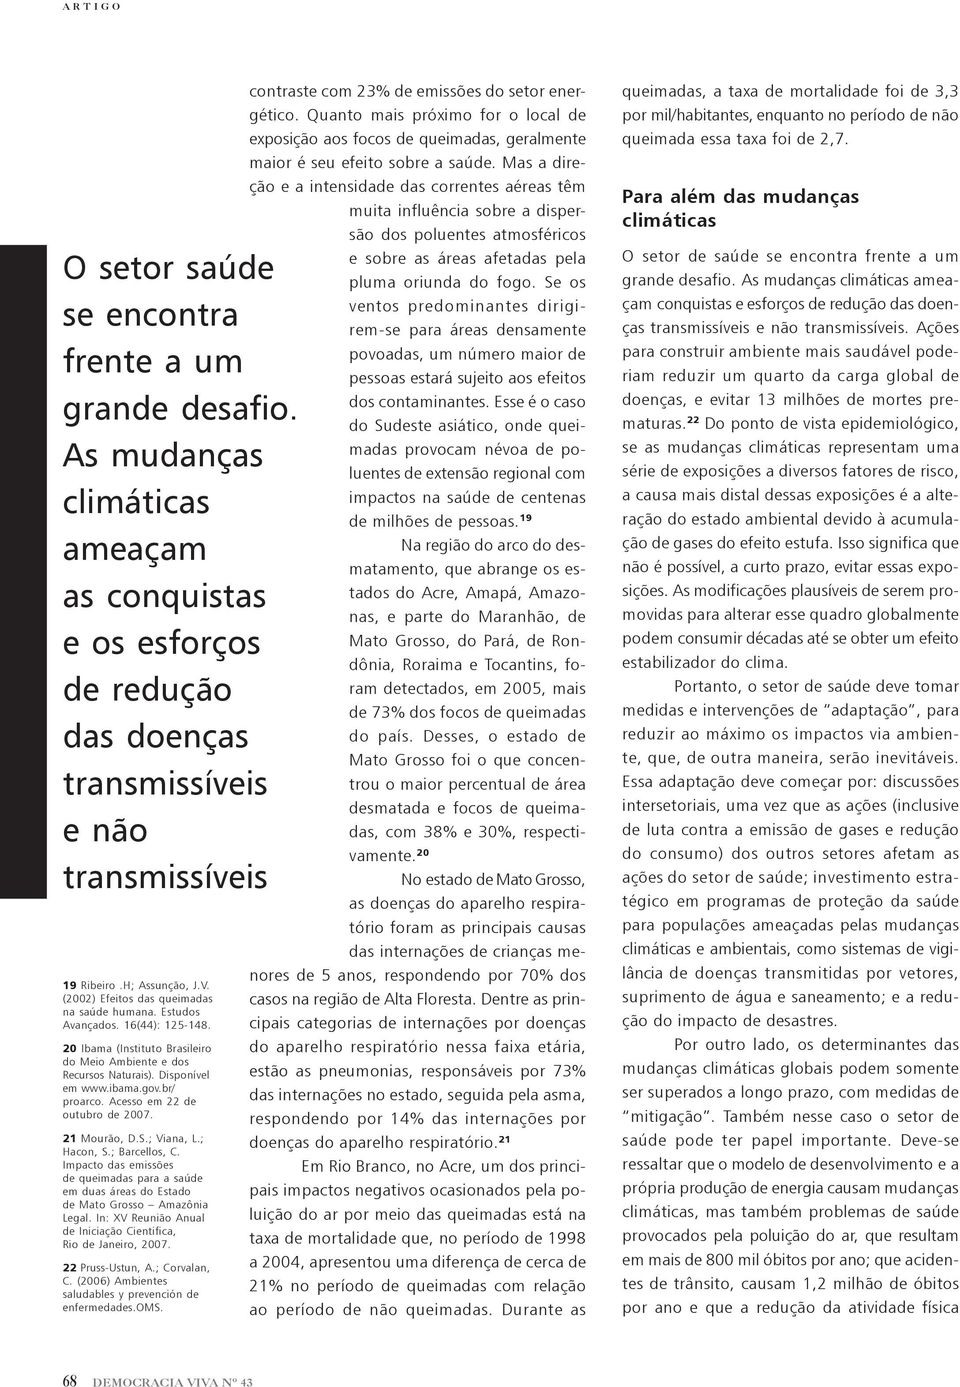 gov.br/ proarco. Acesso em 22 de outubro de 2007. 21 Mourão, D.S.; Viana, L.; Hacon, S.; Barcellos, C.